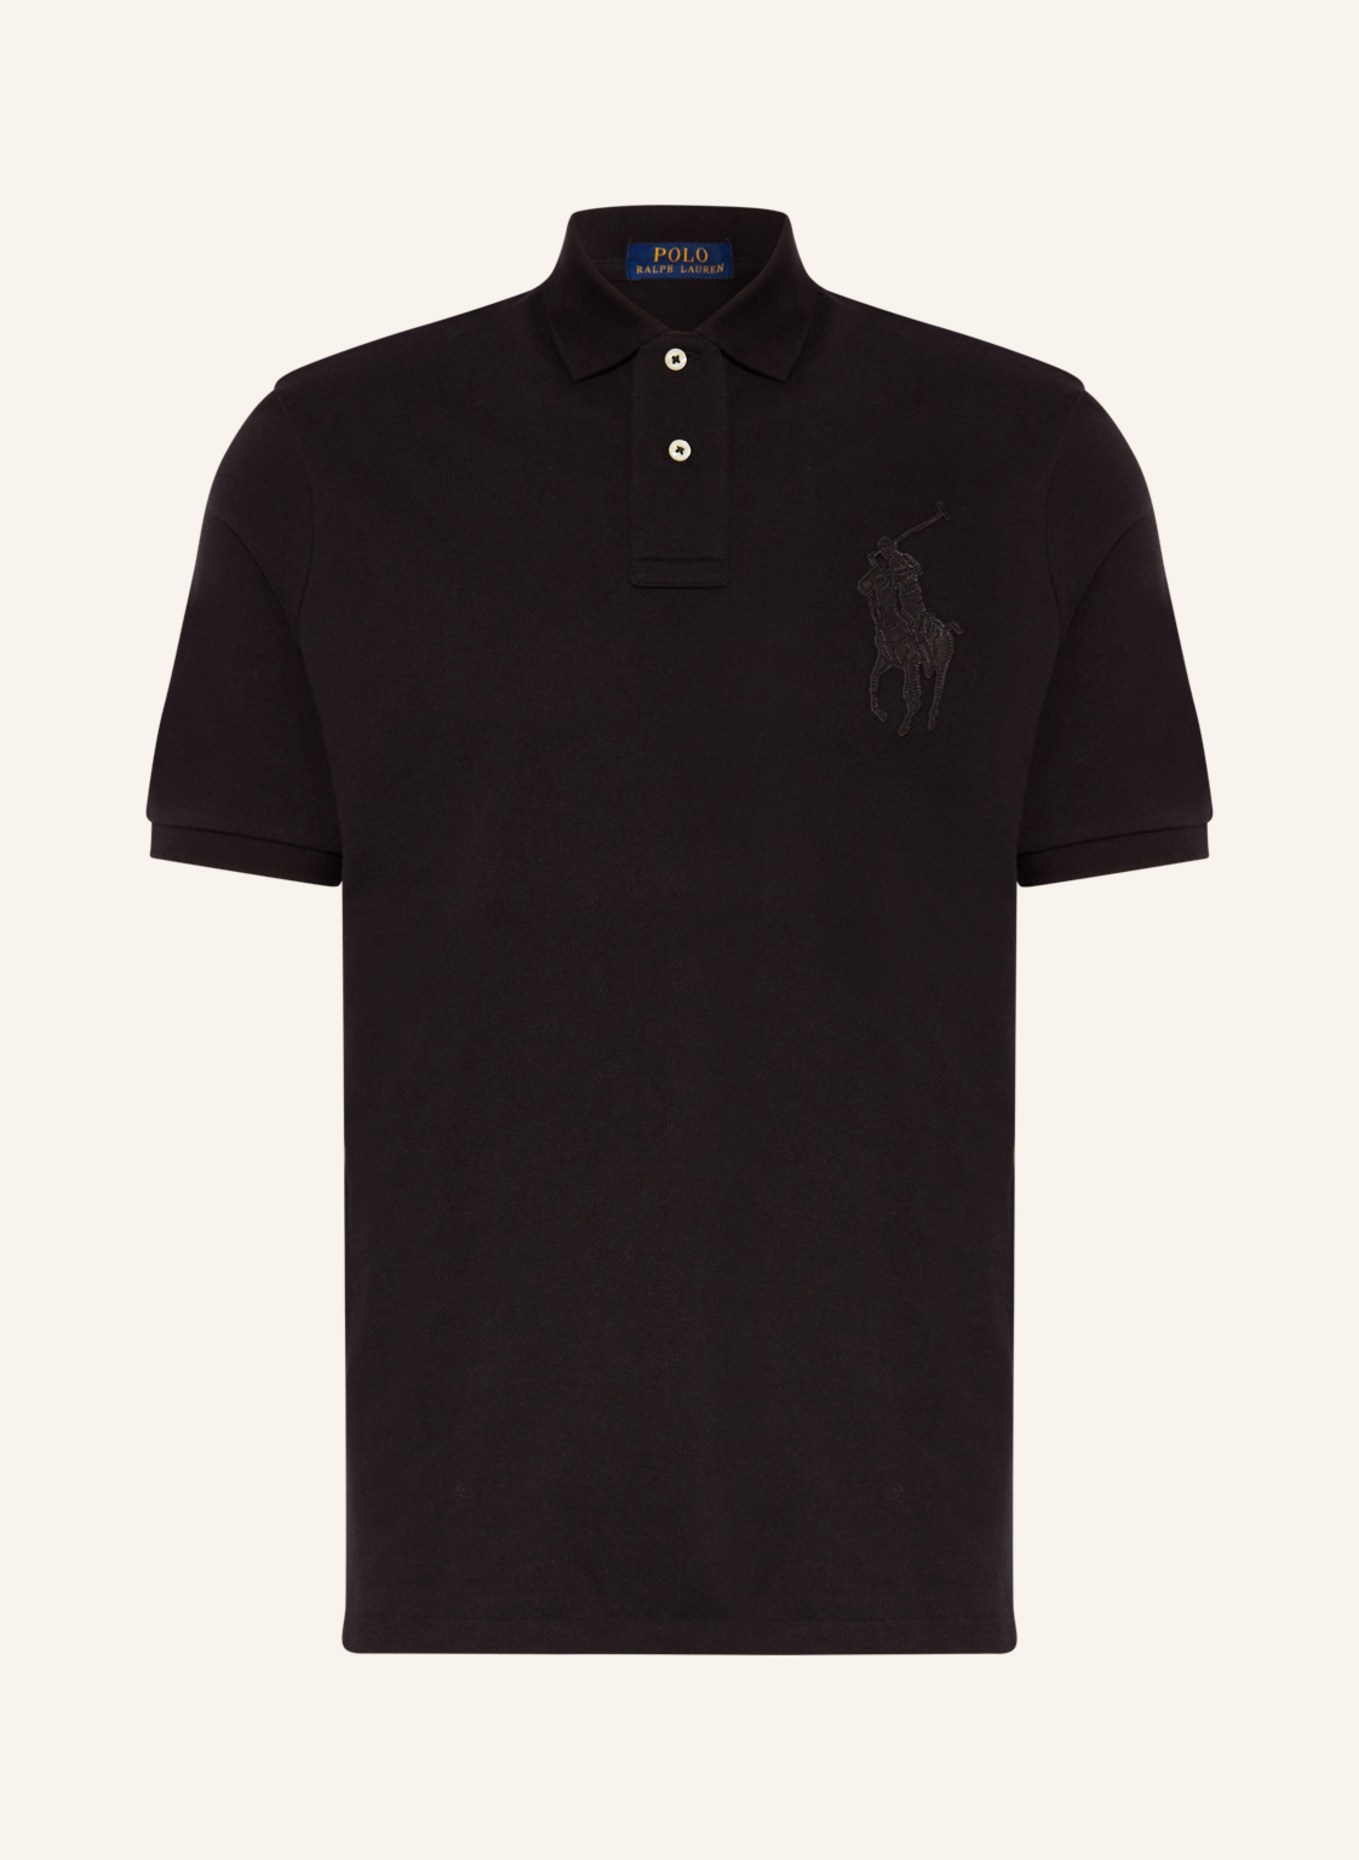 POLO RALPH LAUREN Piqué polo shirt classic fit, Color: BLACK (Image 1)